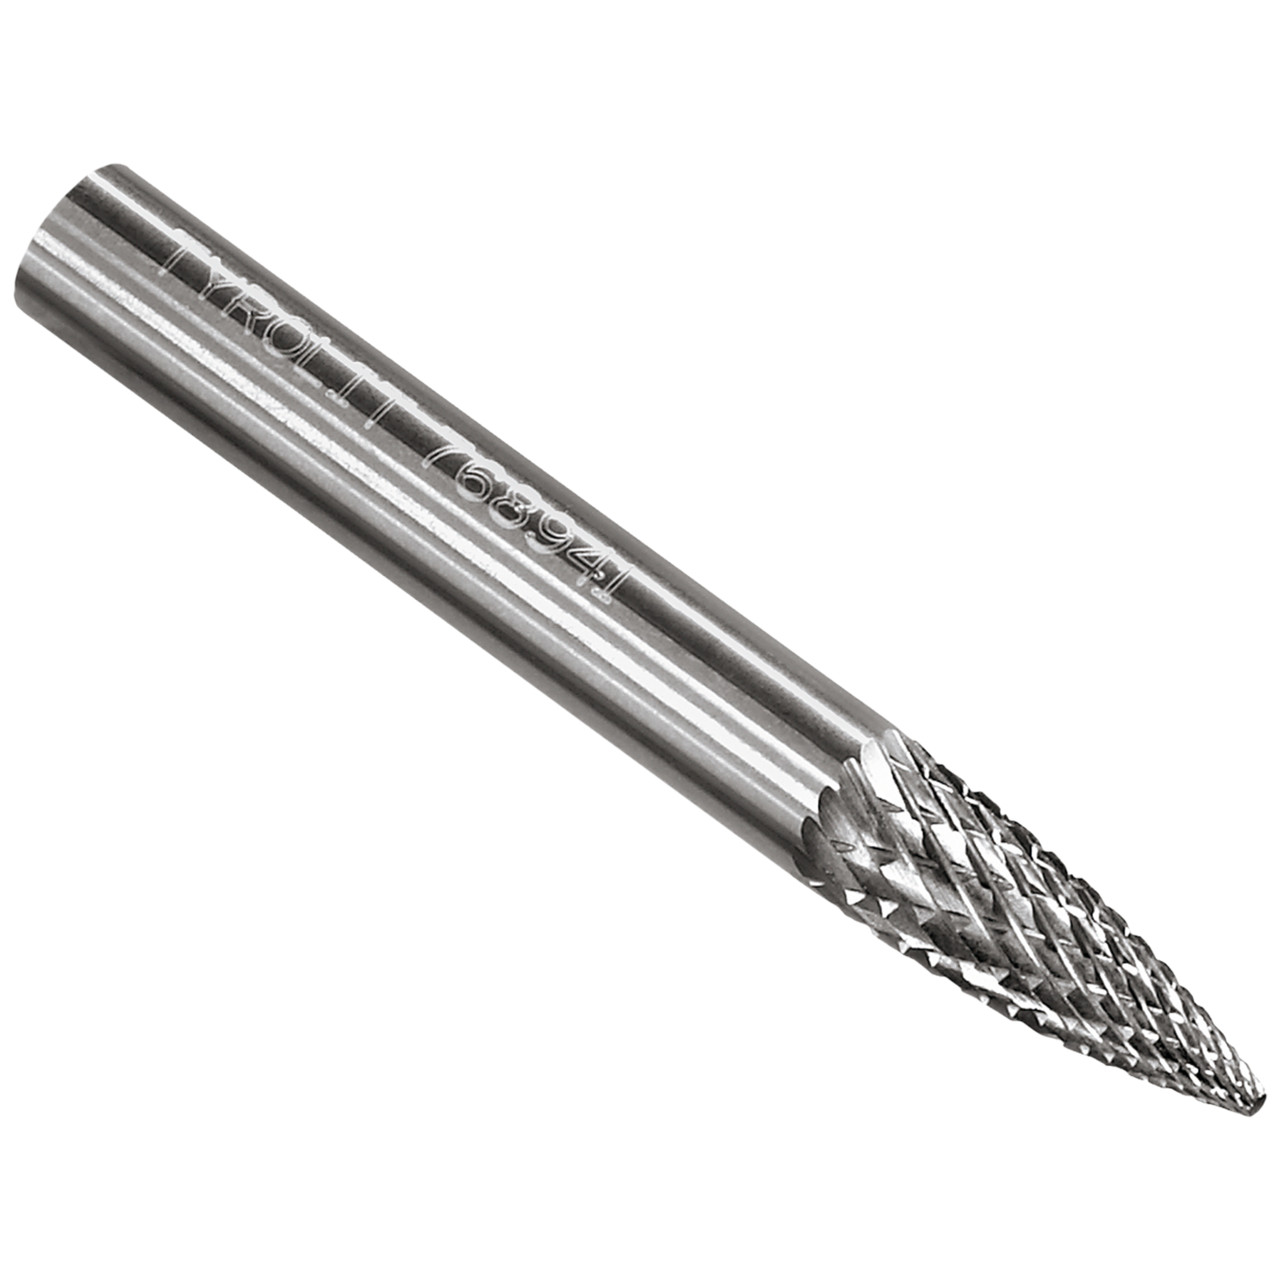 TYROLIT hardmetalen frees DxT-SxL 16x25-6x70 Voor gietijzer, staal en roestvrij staal, vorm: 52SPG - projectiel, Art. 768951